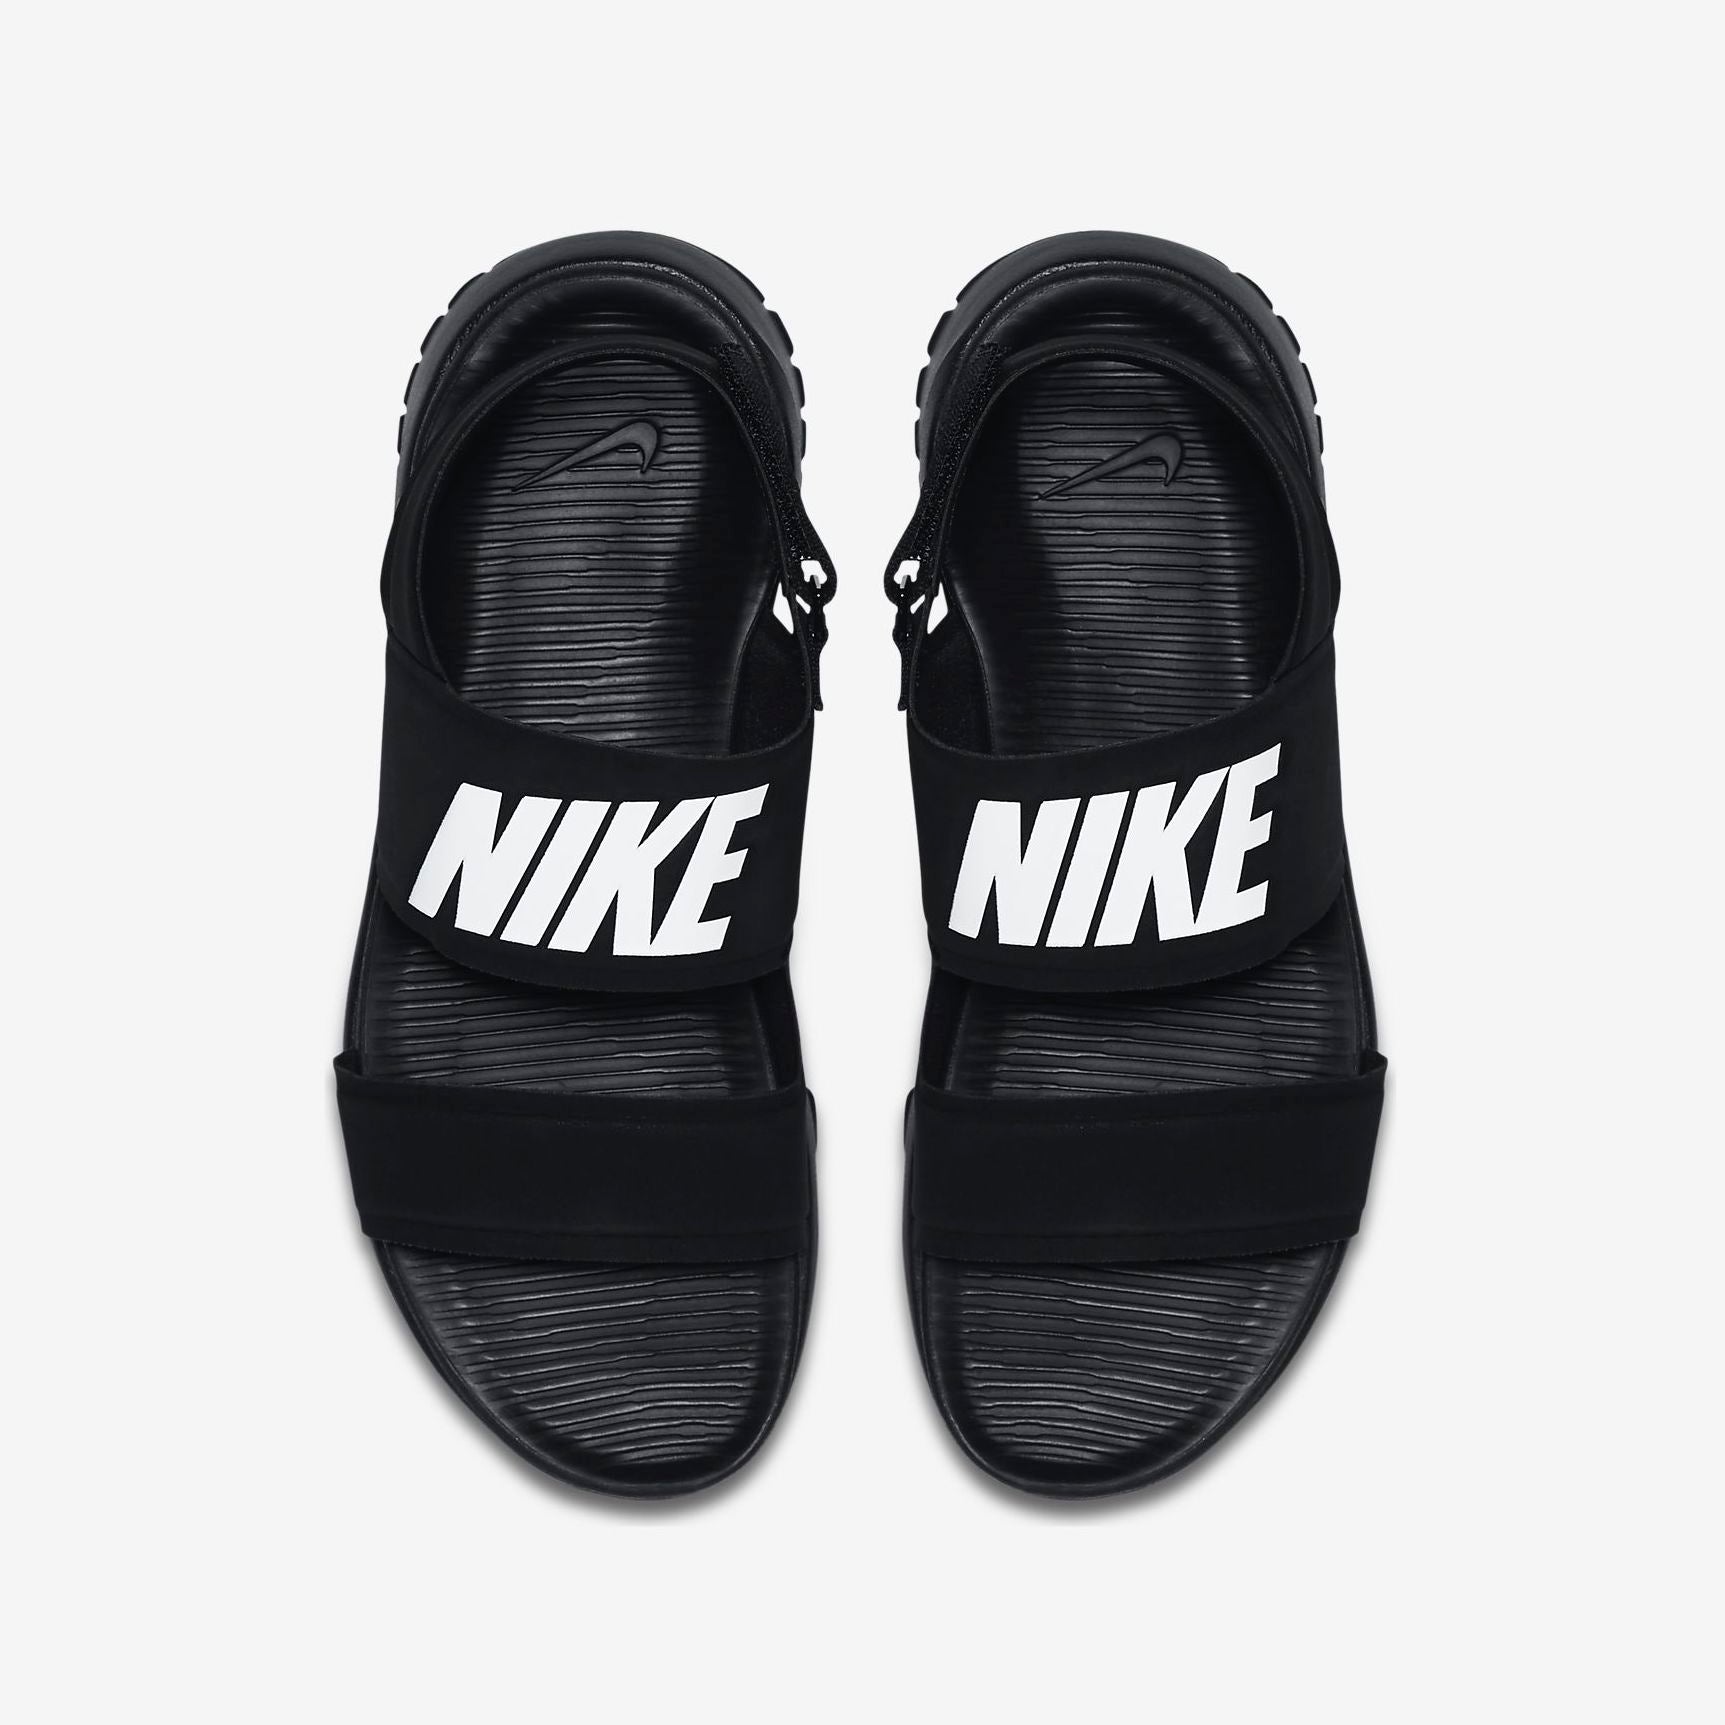 Women's Nike Sandals (Black/White)(882694-001) – Trilogy Merch PH